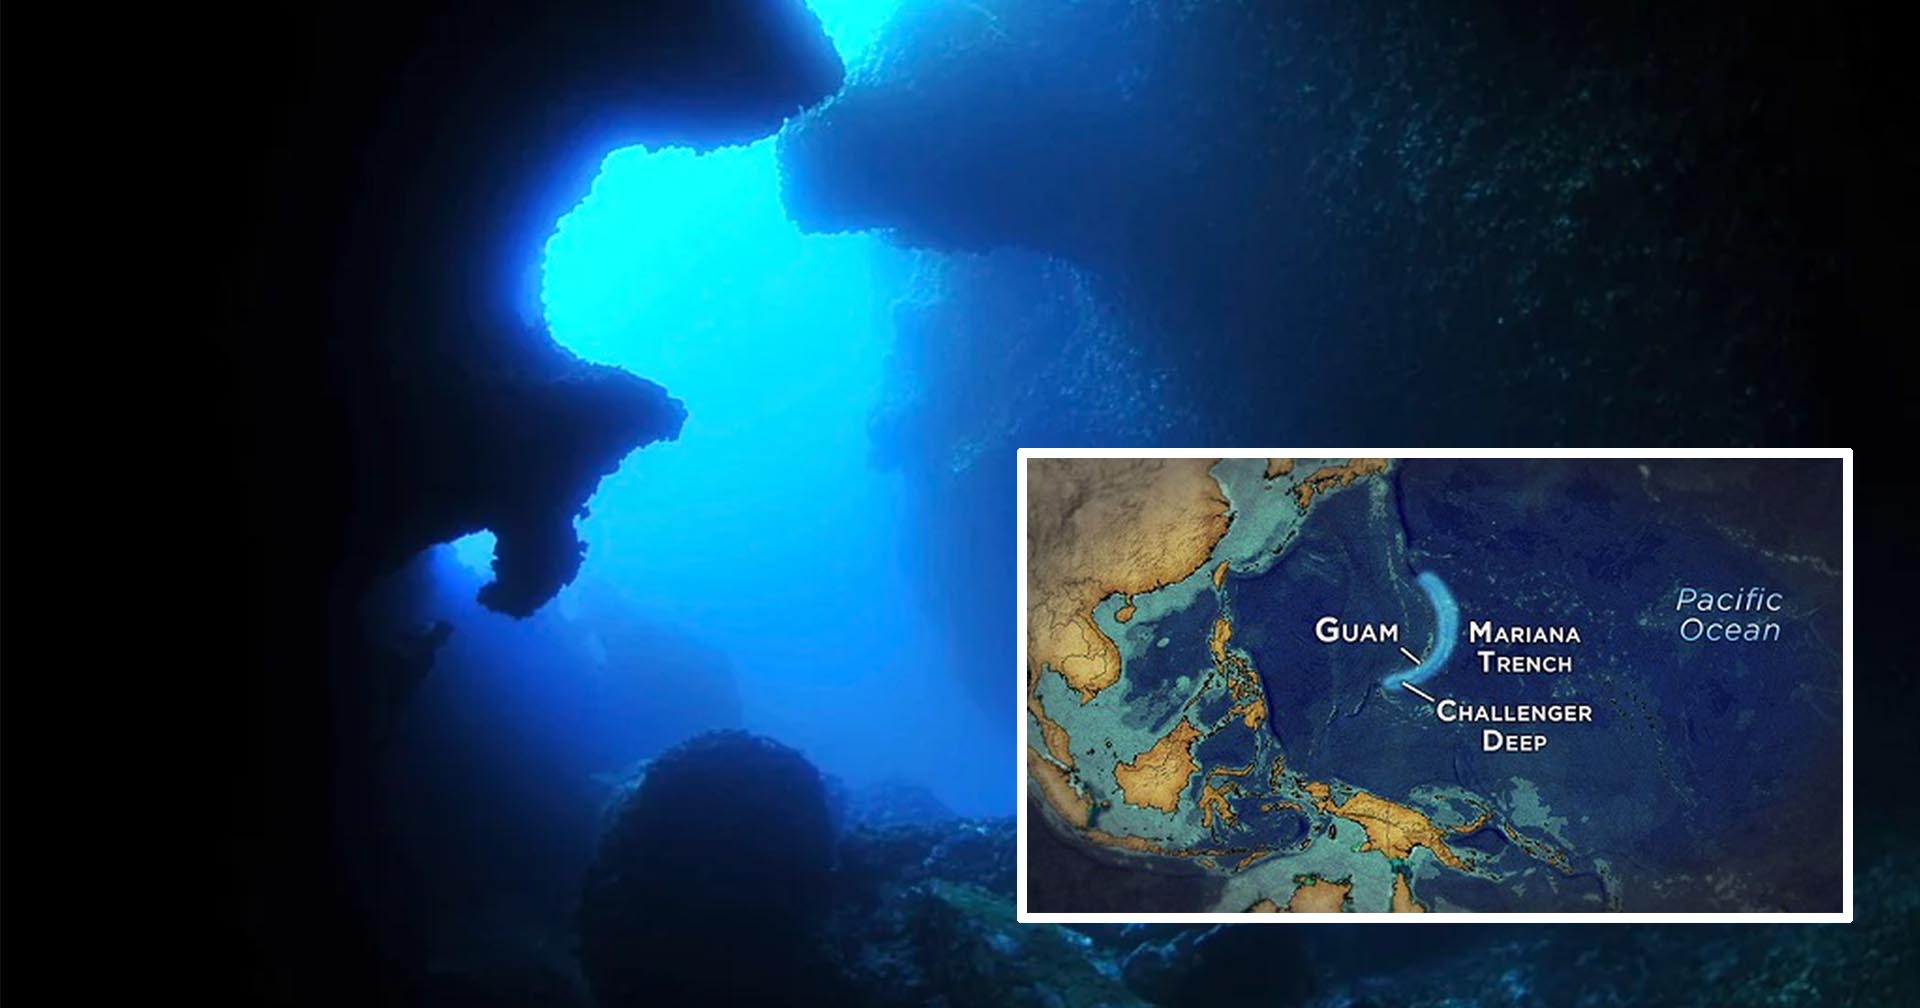 รู้จักกับ Challenger Deep จุดที่ลึกที่สุดในมหาสมุทร และ James Cameron เคยไปเยือนมาแล้ว